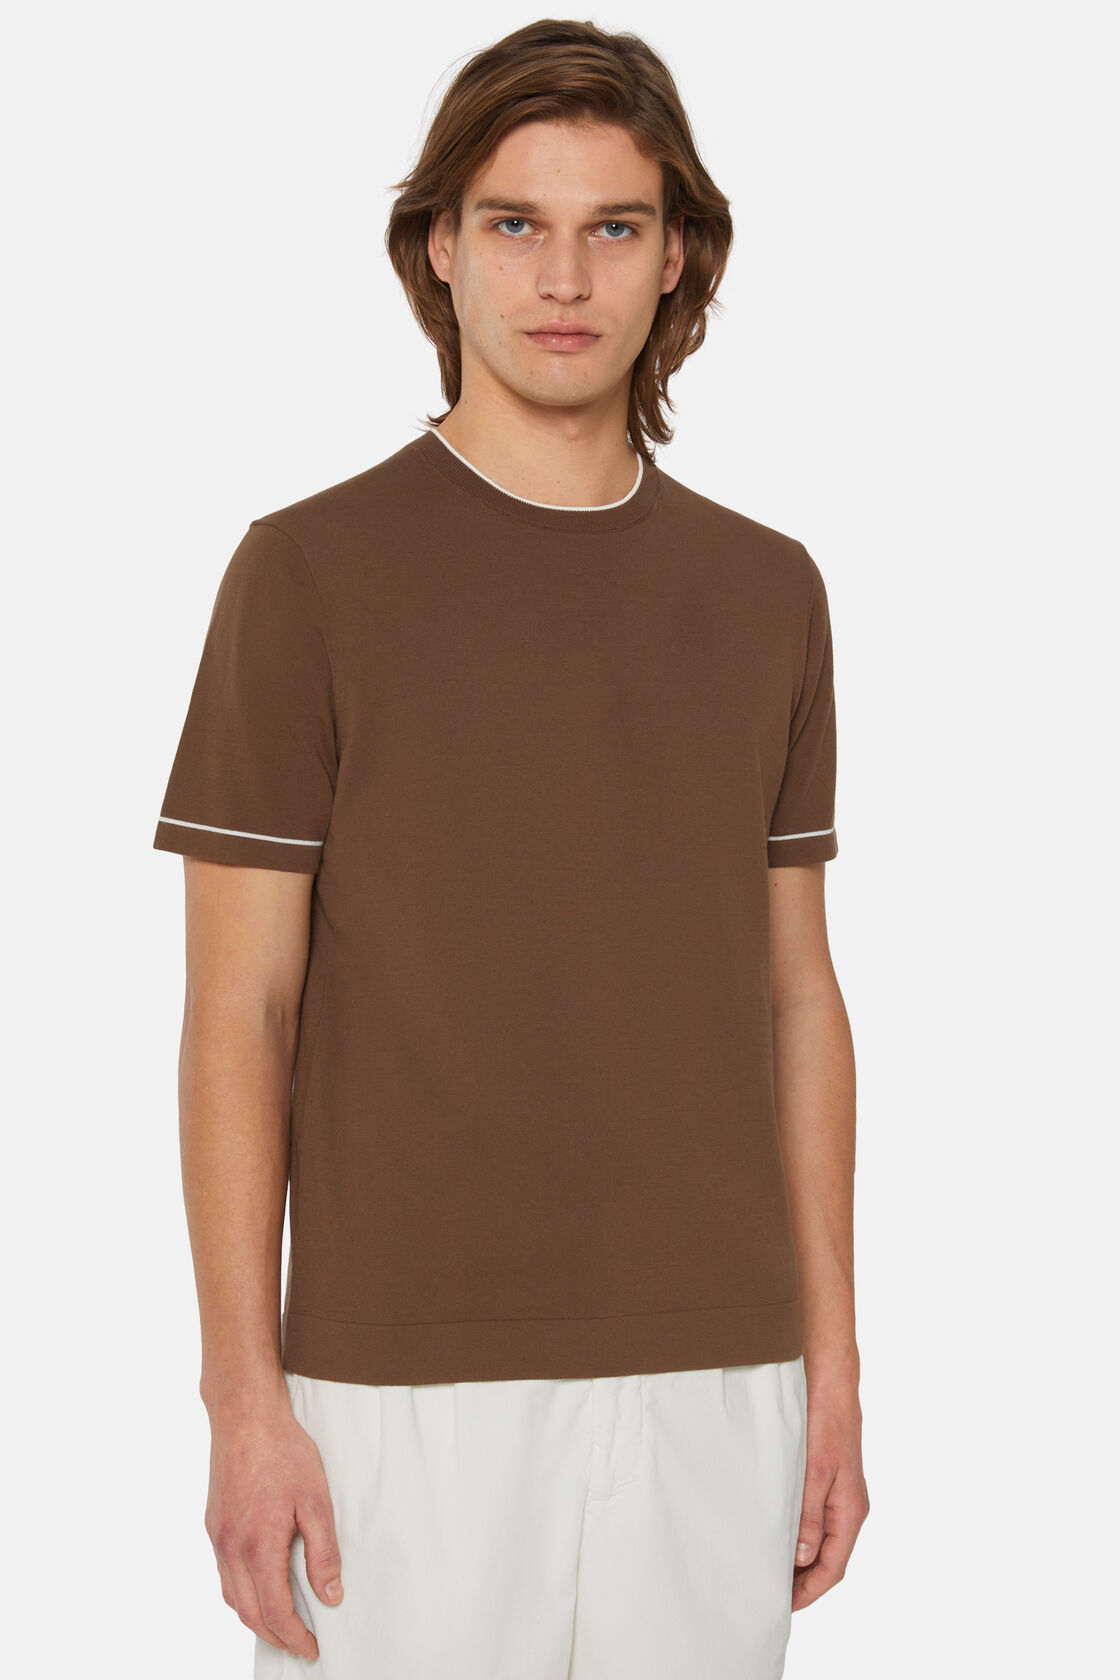 Braunes Strick-T-Shirt Aus Baumwollkrepp, Braun, hi-res